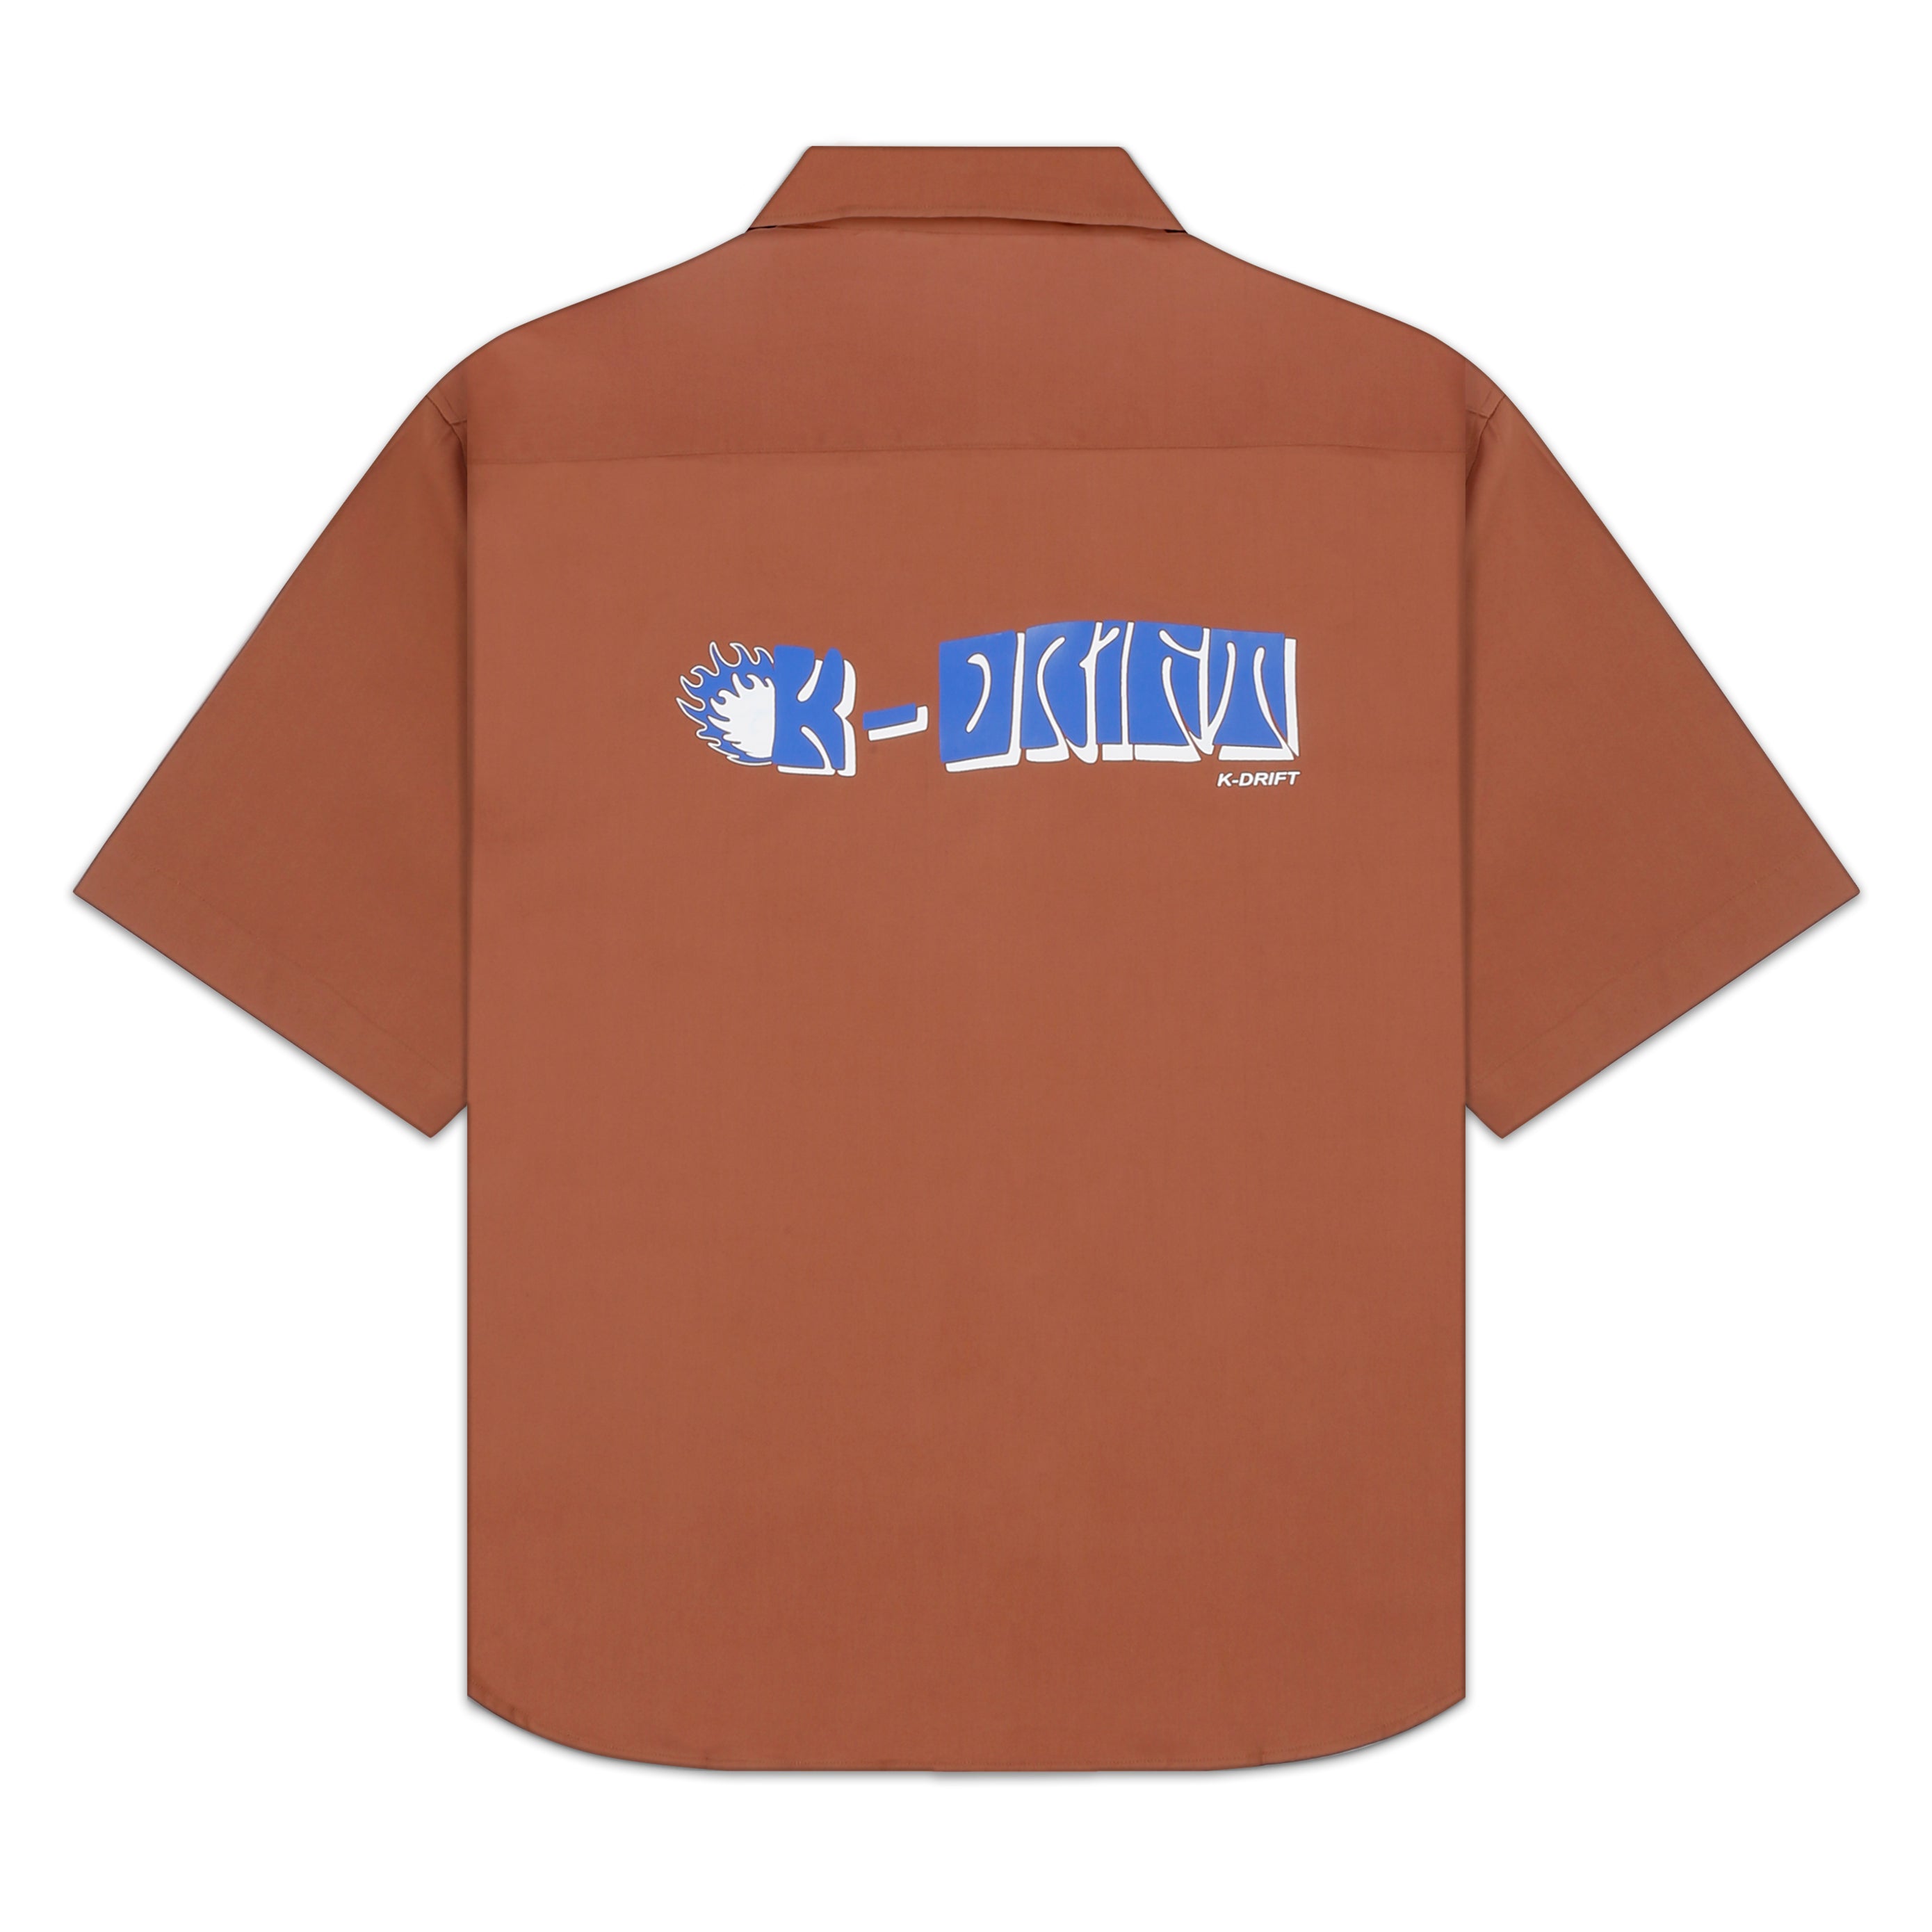 ‘K-Drift' Cotton Shirt